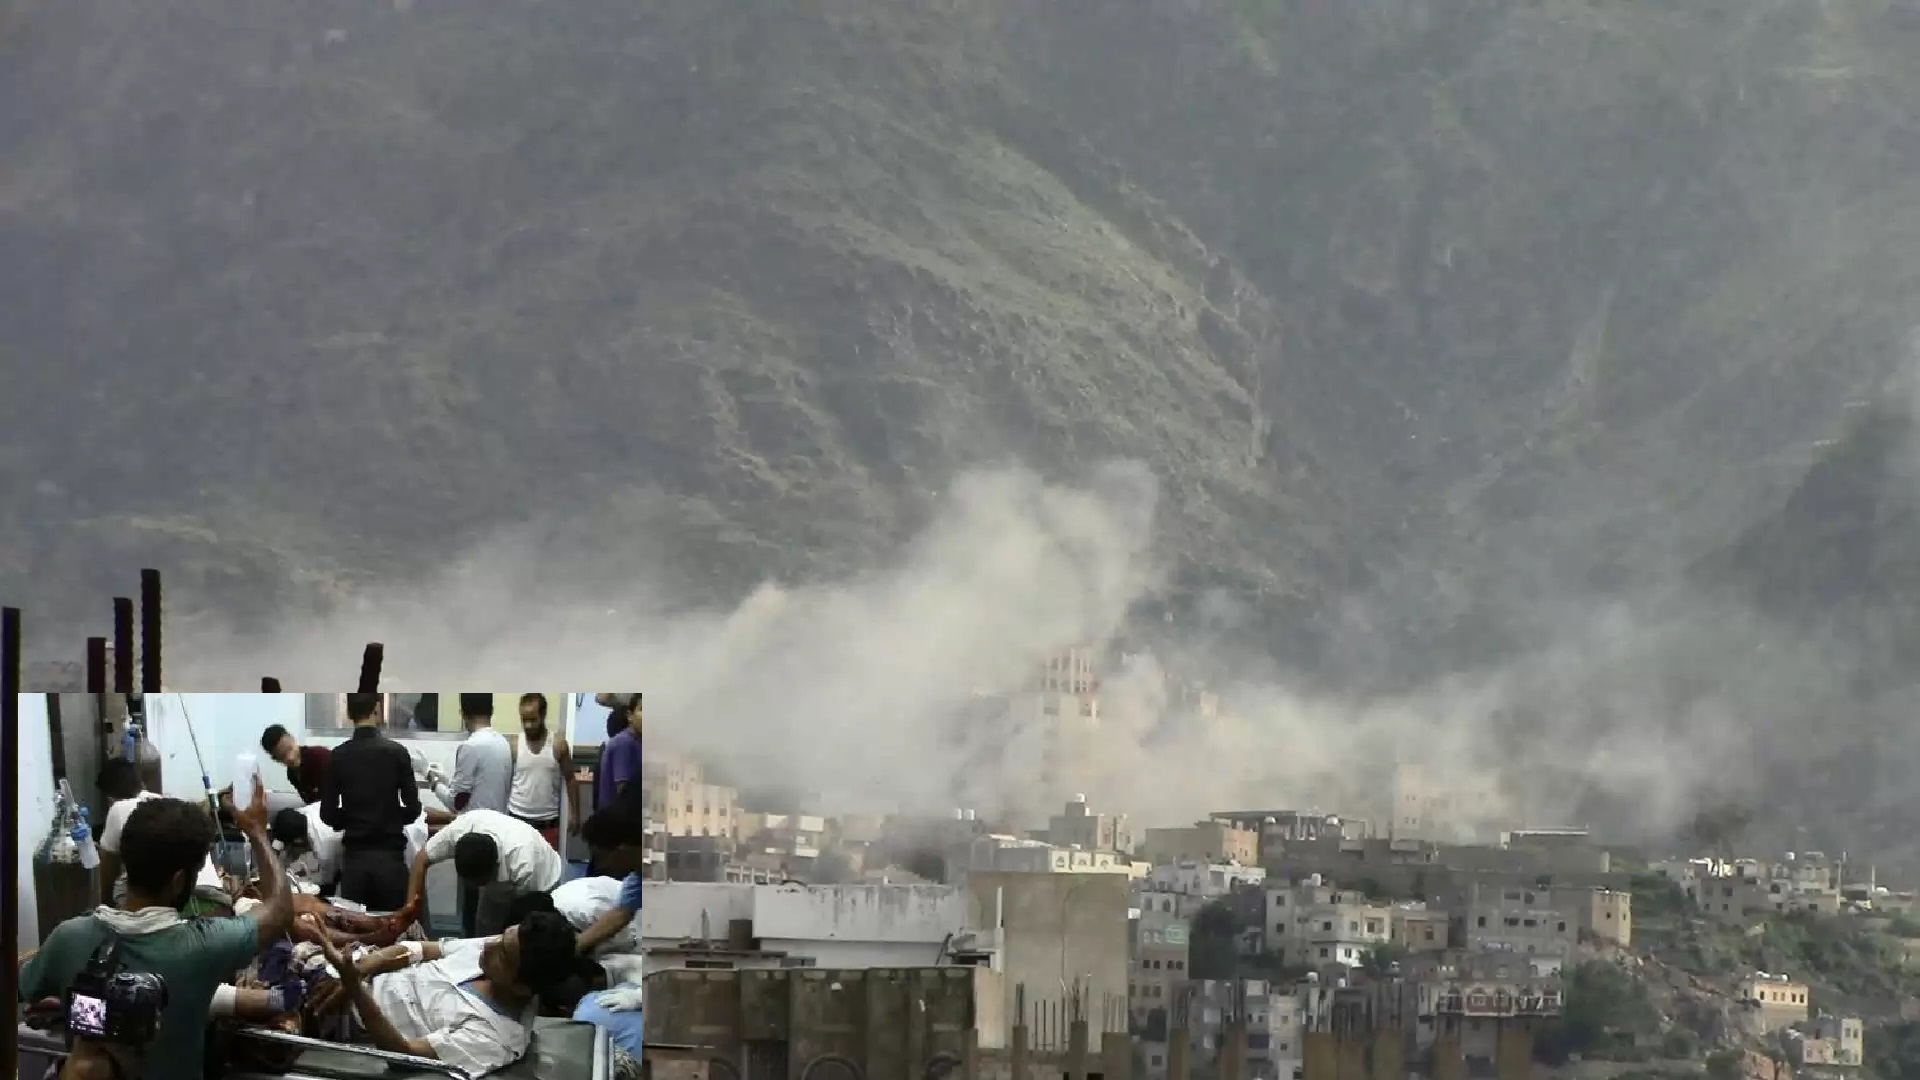 فيديو مخيف في اليمن لإعصارا “تشابالا”